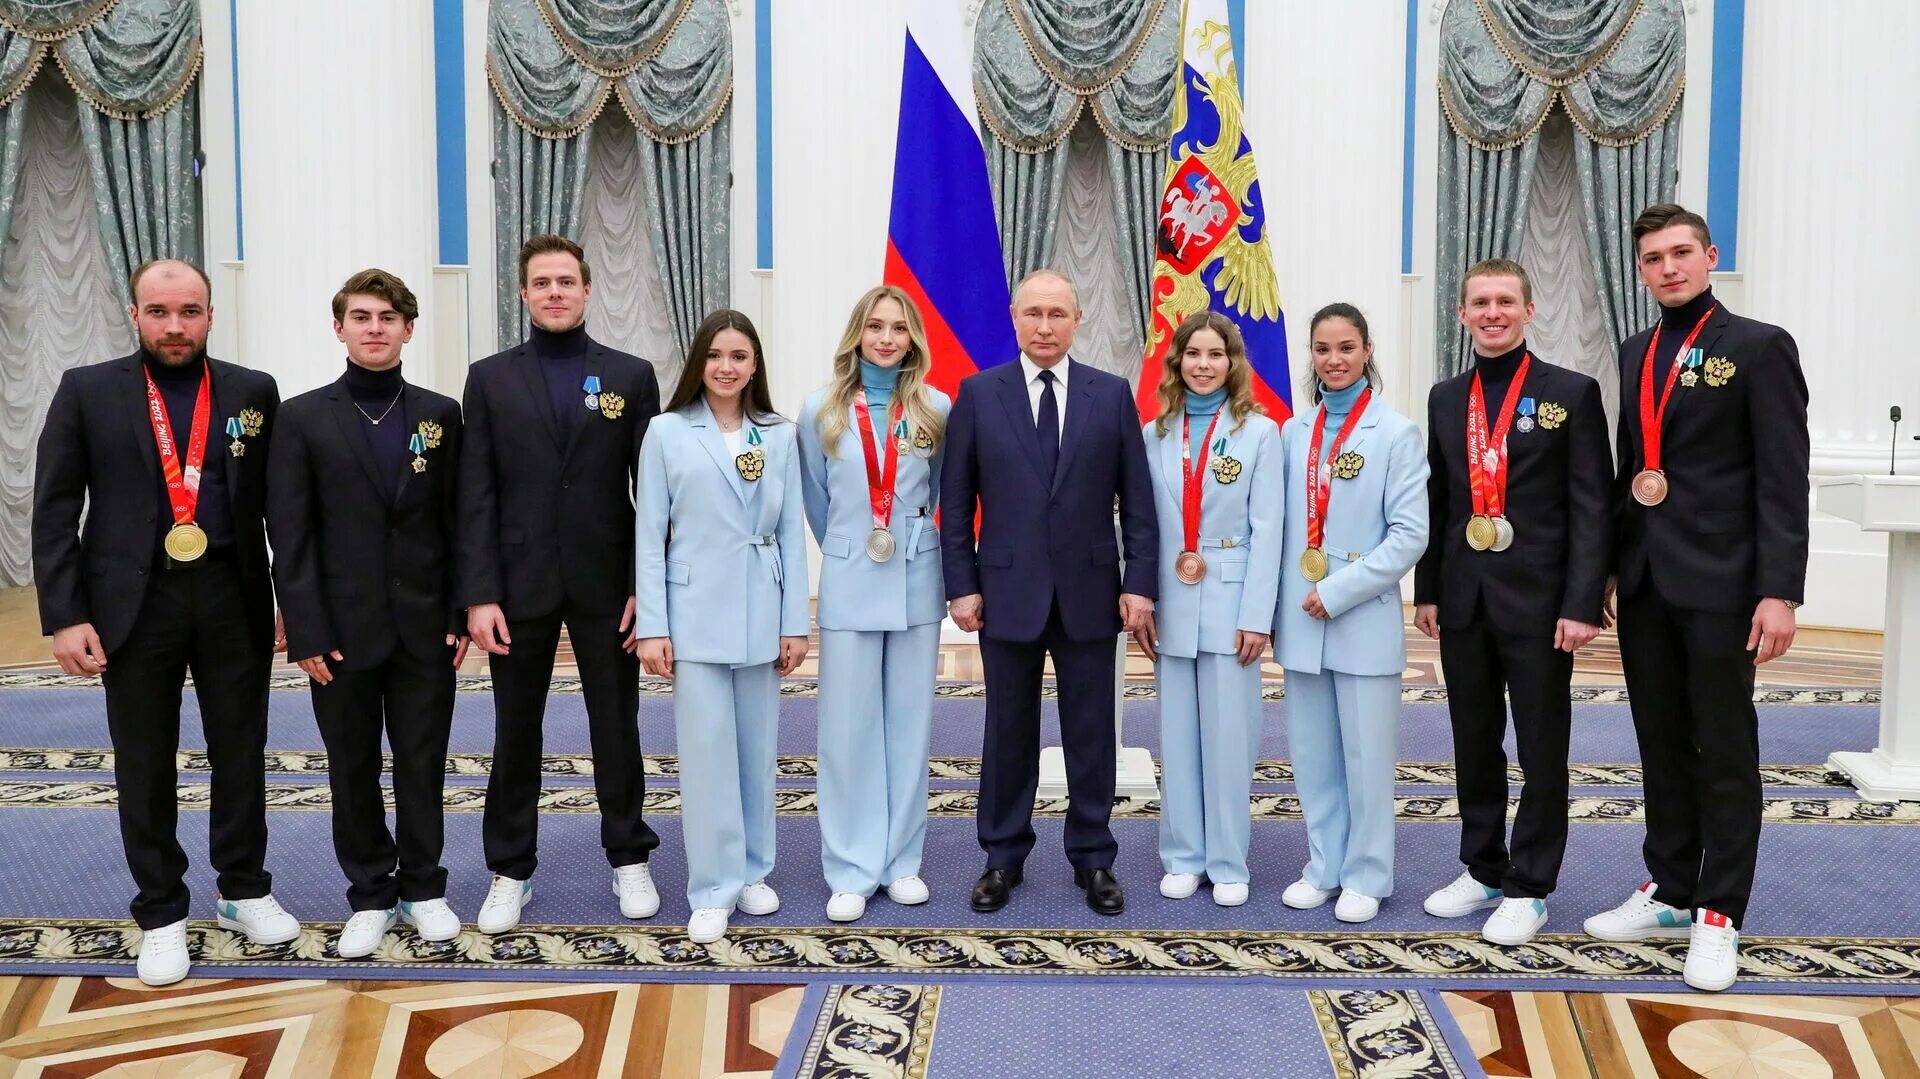 Награждение олимпиады 2022 в Кремле. Победители на олимпийских играх получали в награду